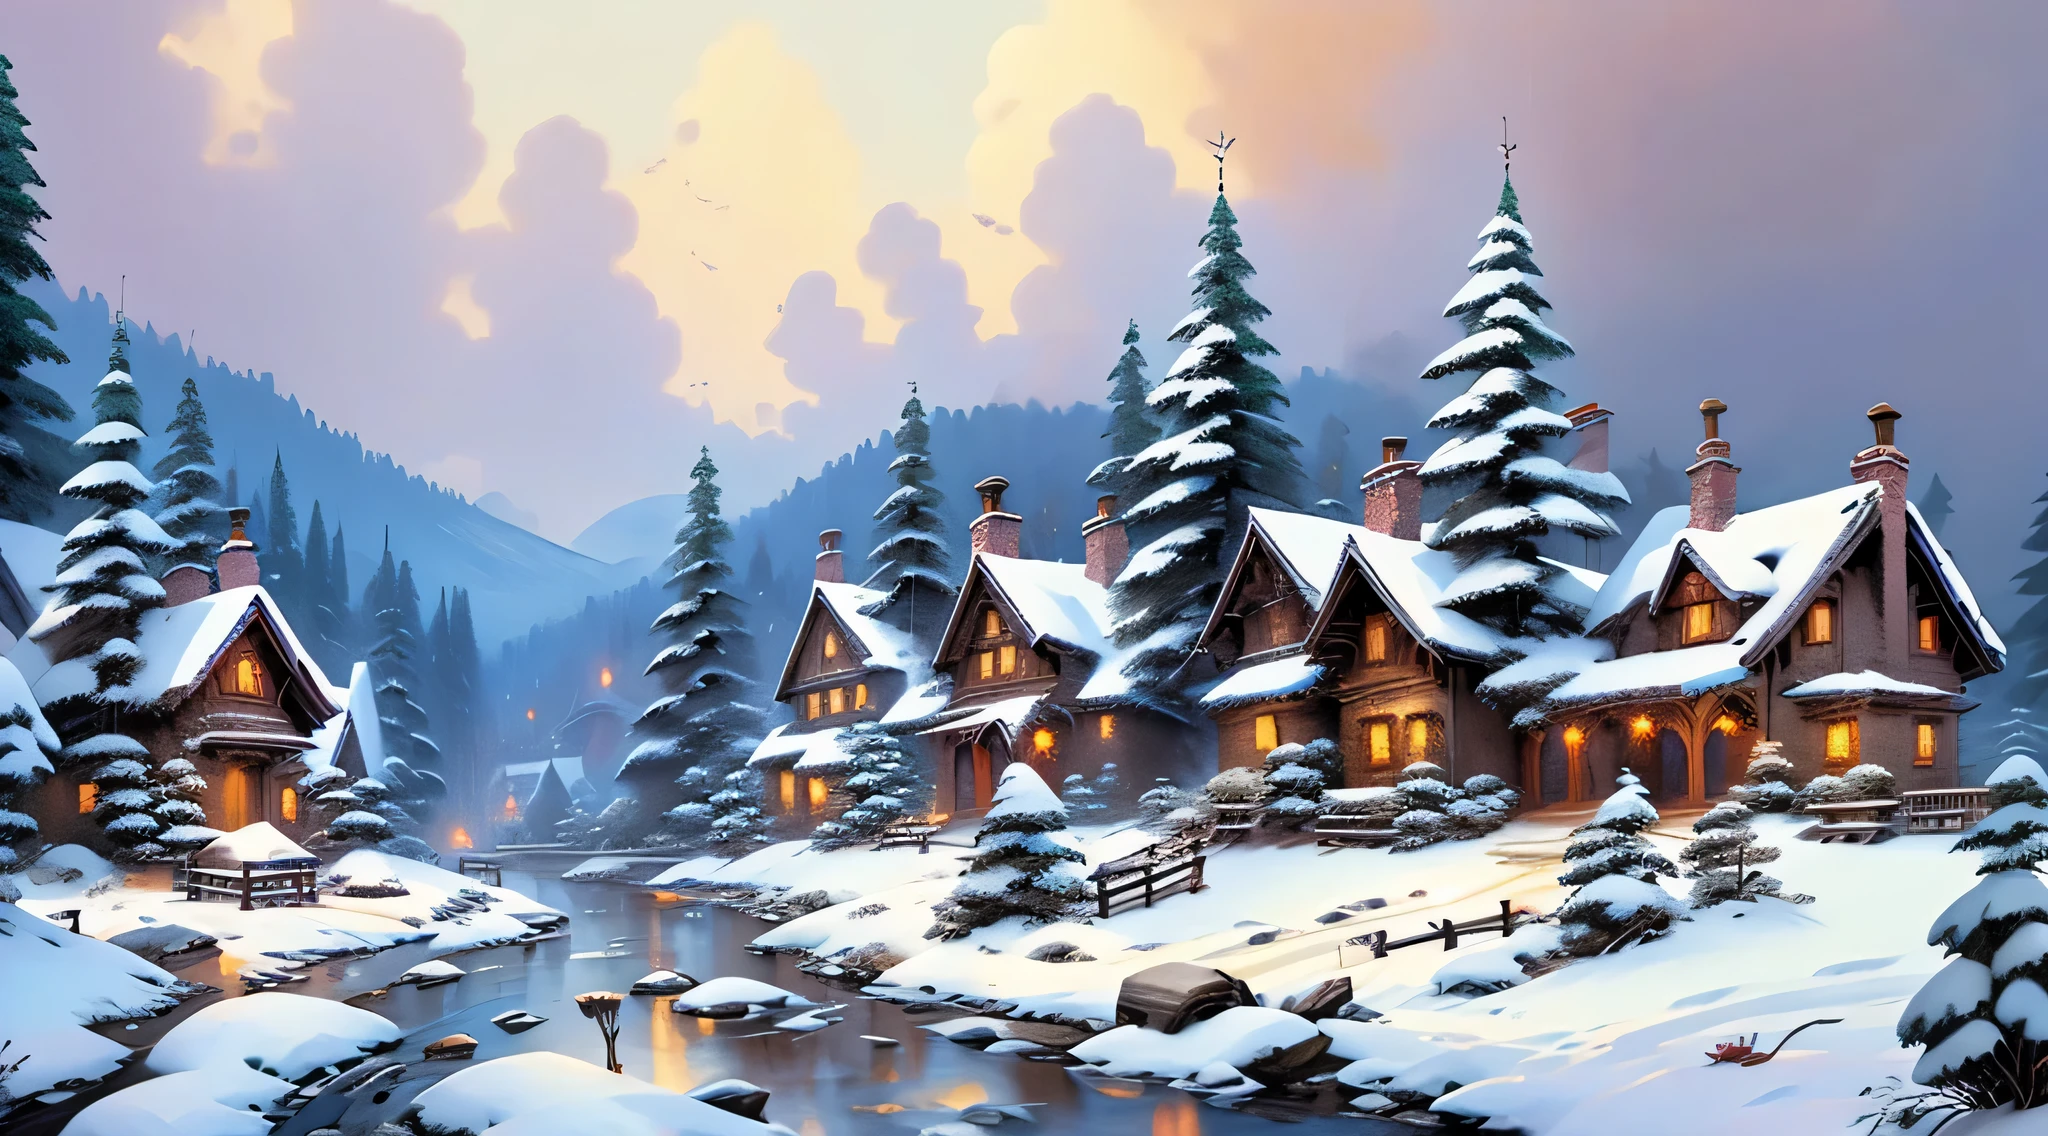 Vila nevada, casas cobertas de neve, árvores cobertas de neve, alta qualidade, Representações elaboradas, expressão detalhada